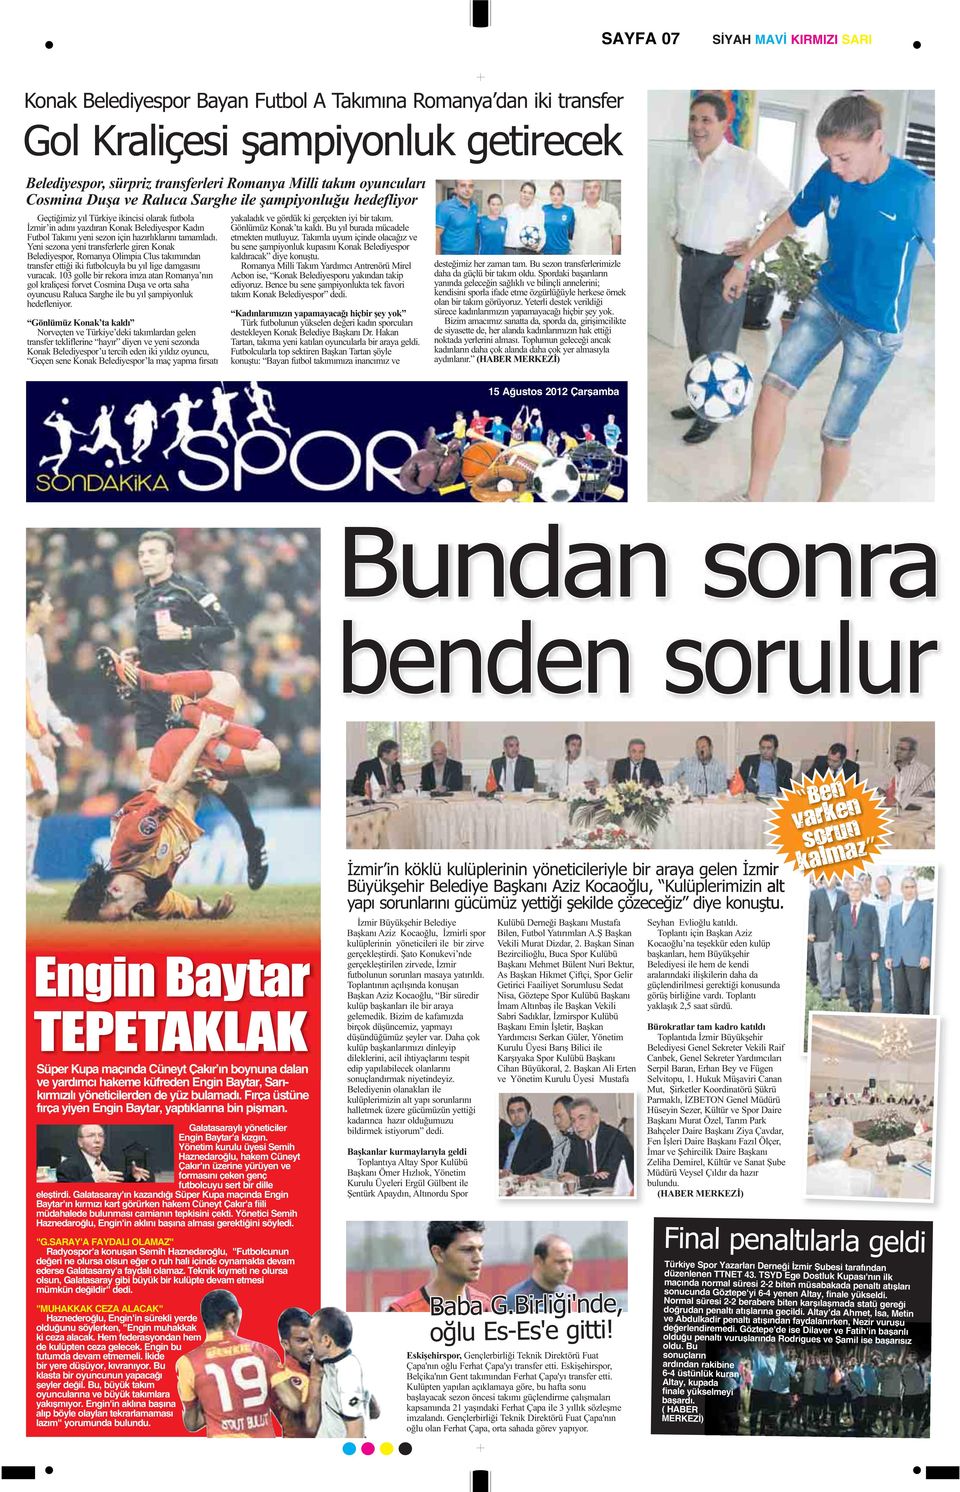 Yönetim kurulu üyesi Semih Haznedaroğlu, hakem Cüneyt Çakır'ın üzerine yürüyen ve formasını çeken genç futbolcuyu sert bir dille eleştirdi.